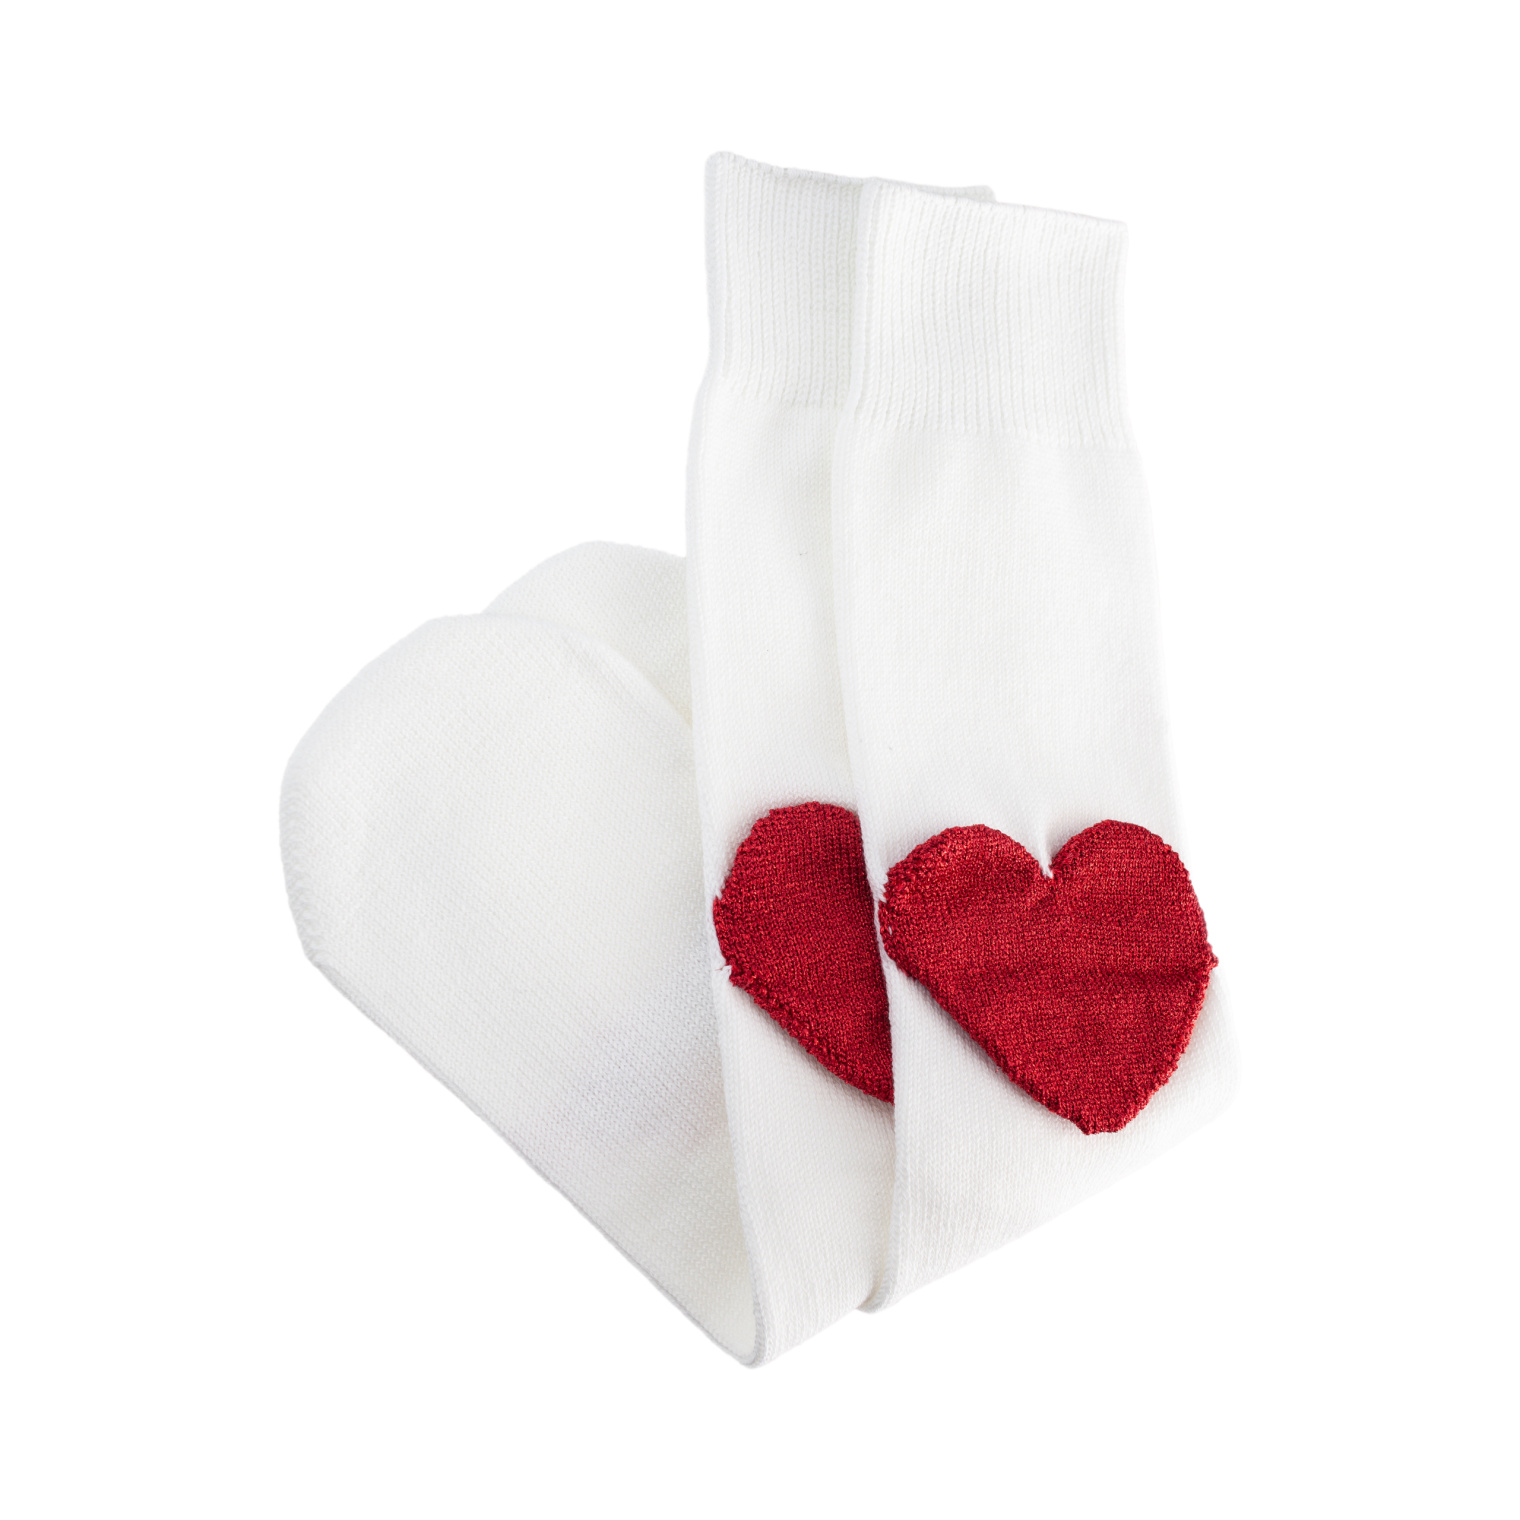 Doublet Red heart heel white socks